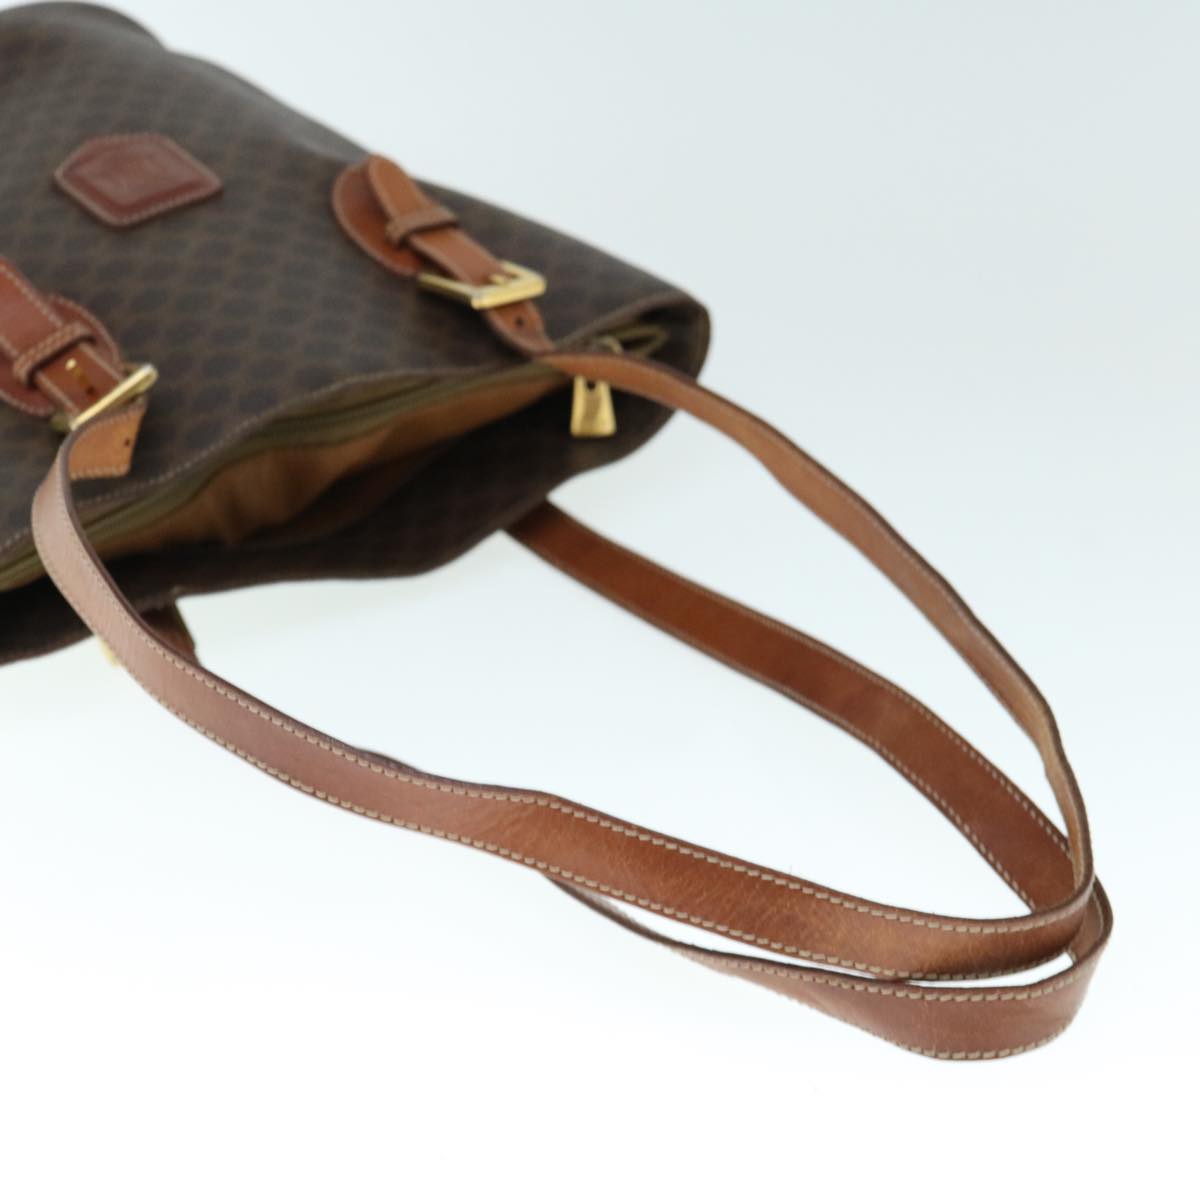 CELINE Macadam Canvas Shoulder Bag PVC Leather Brown Auth 60044